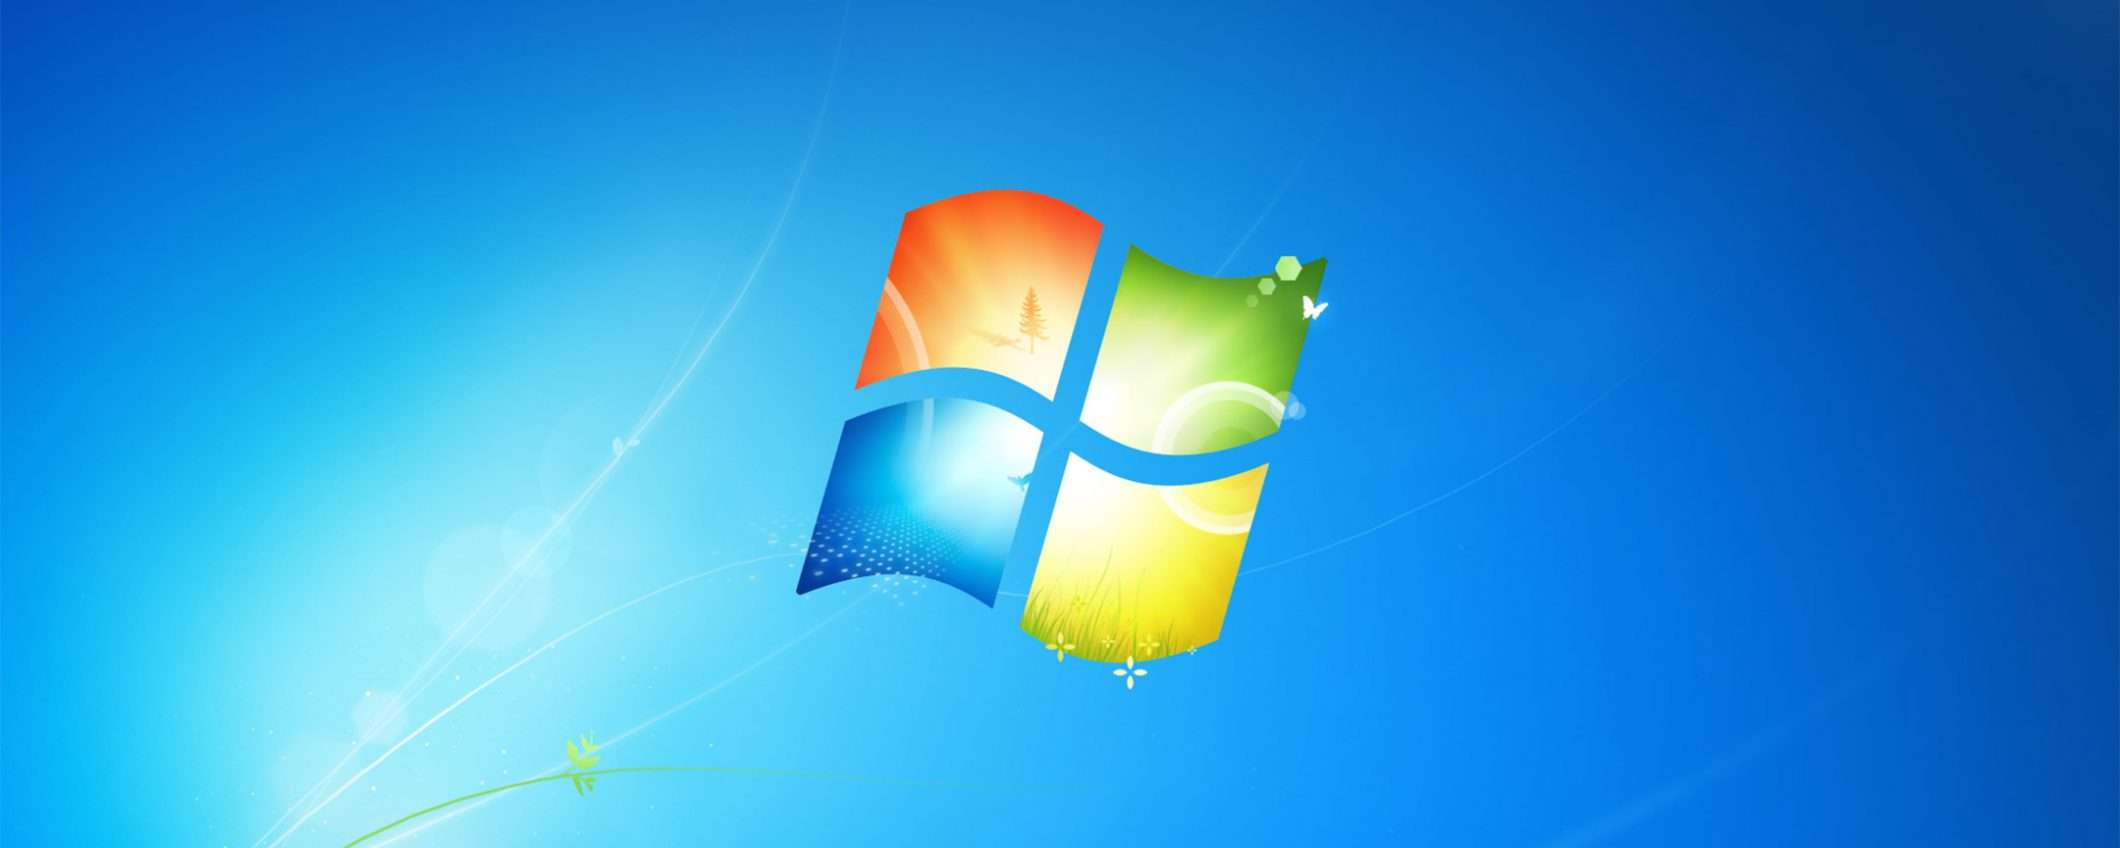 Windows 7 open source è l'idea della FSF